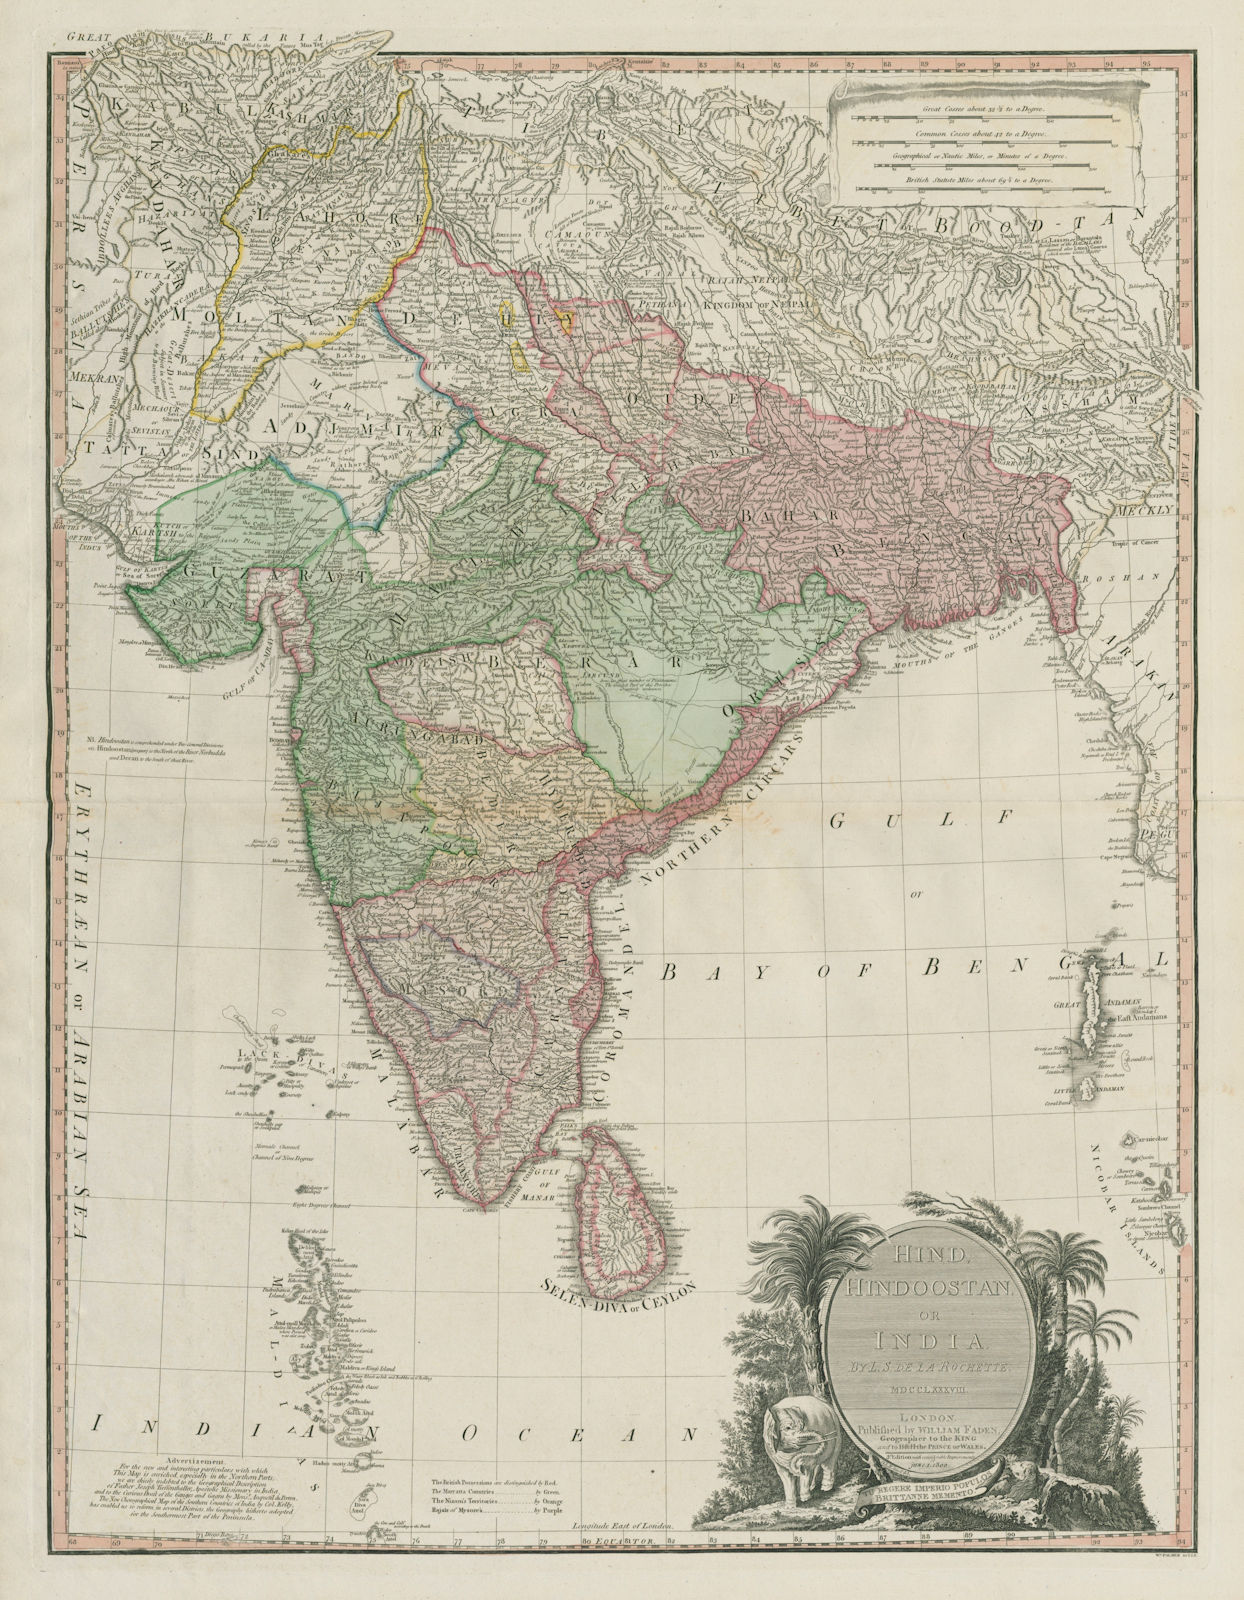 Hind, Hindoostan or India. Marratta Nizam Mysore British. DELAROCHETTE 1800 map